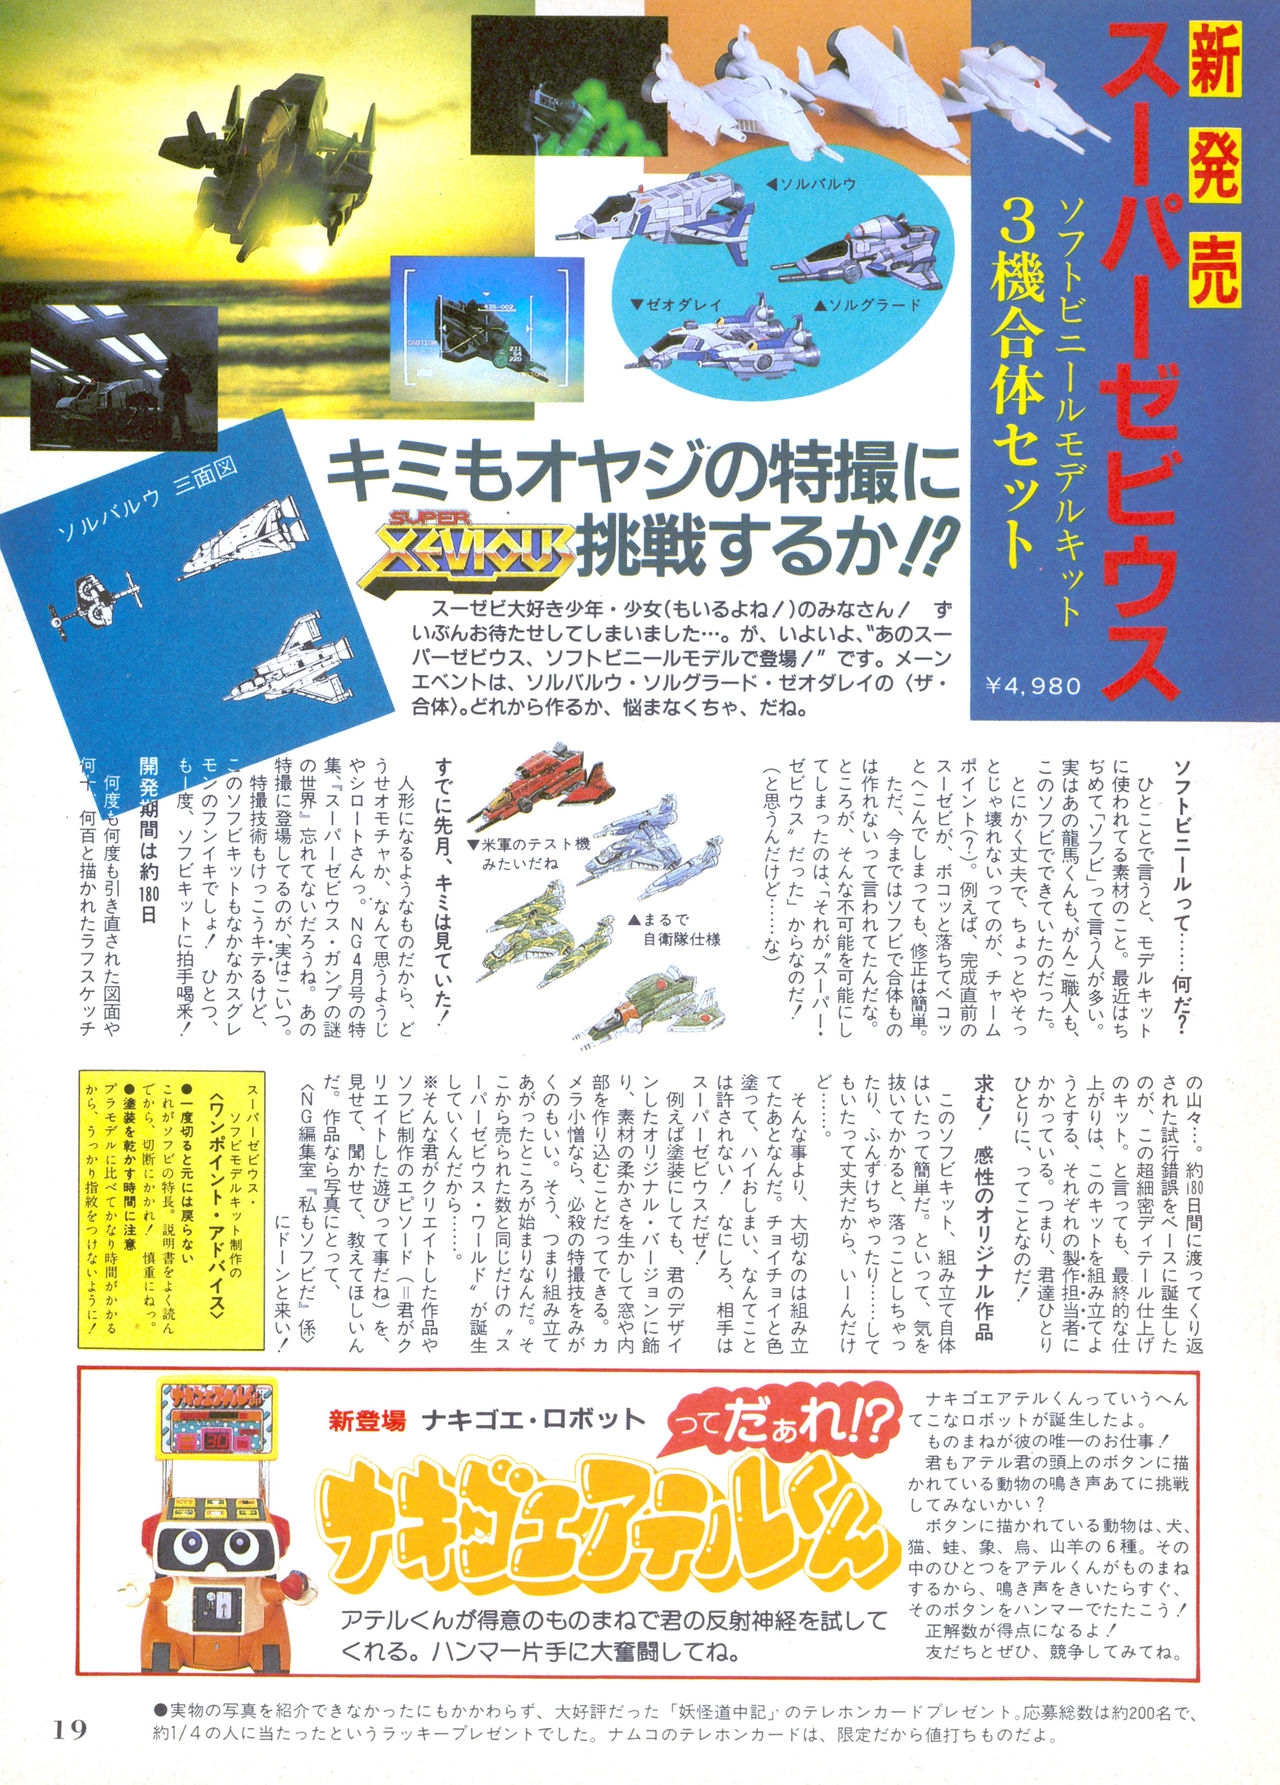 NG Namco Community Magazine 07 18